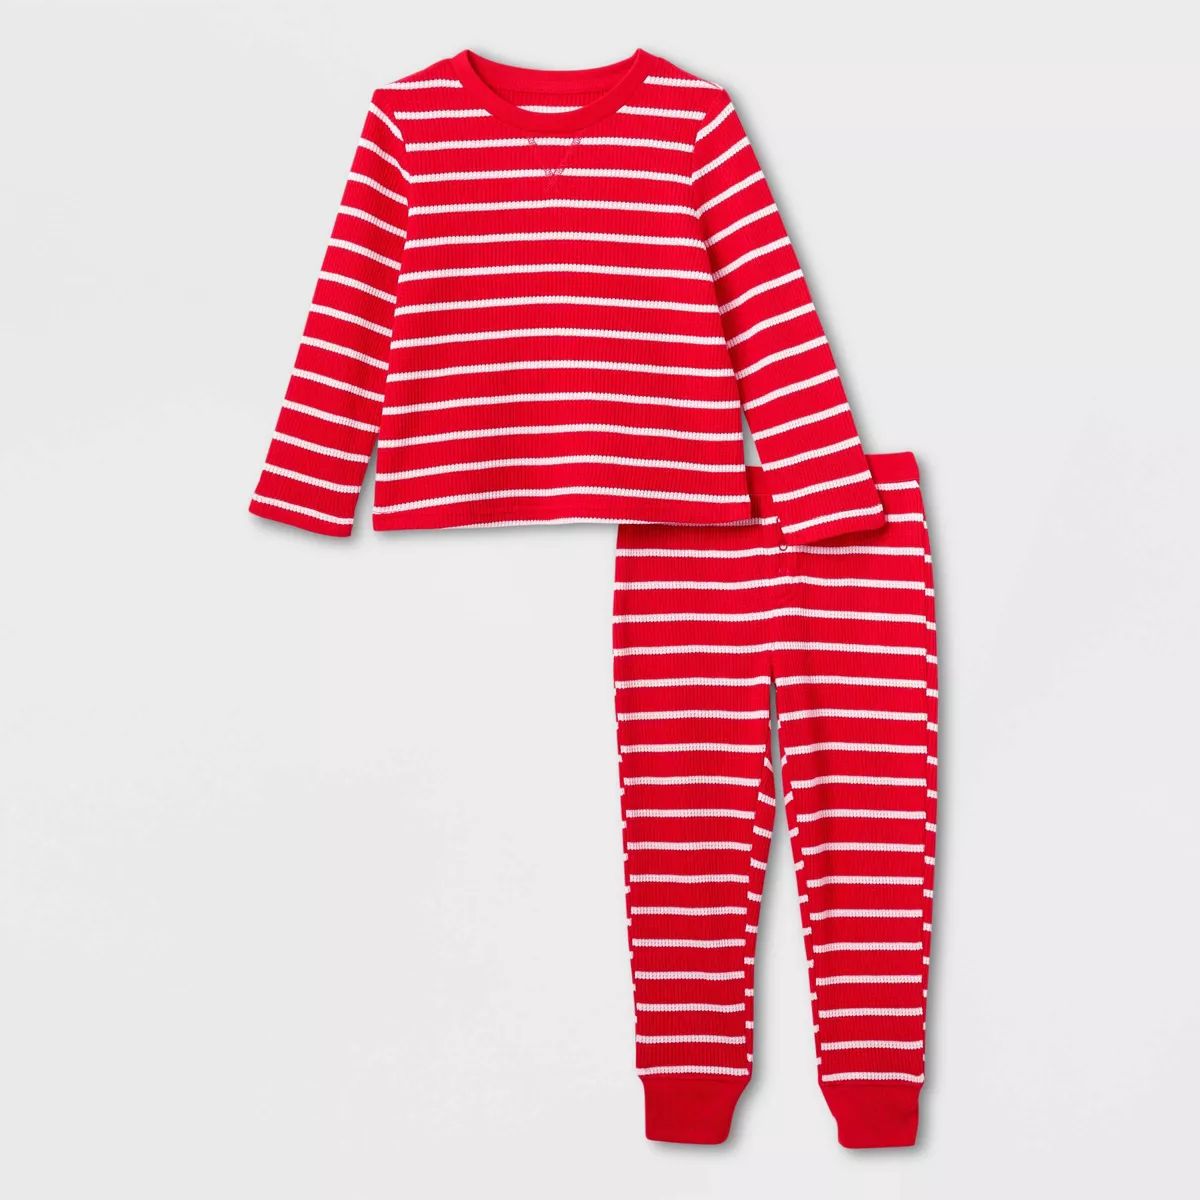 Toddler Striped Matching Family Thermal Pajama Set - Wondershop™ Red | Target